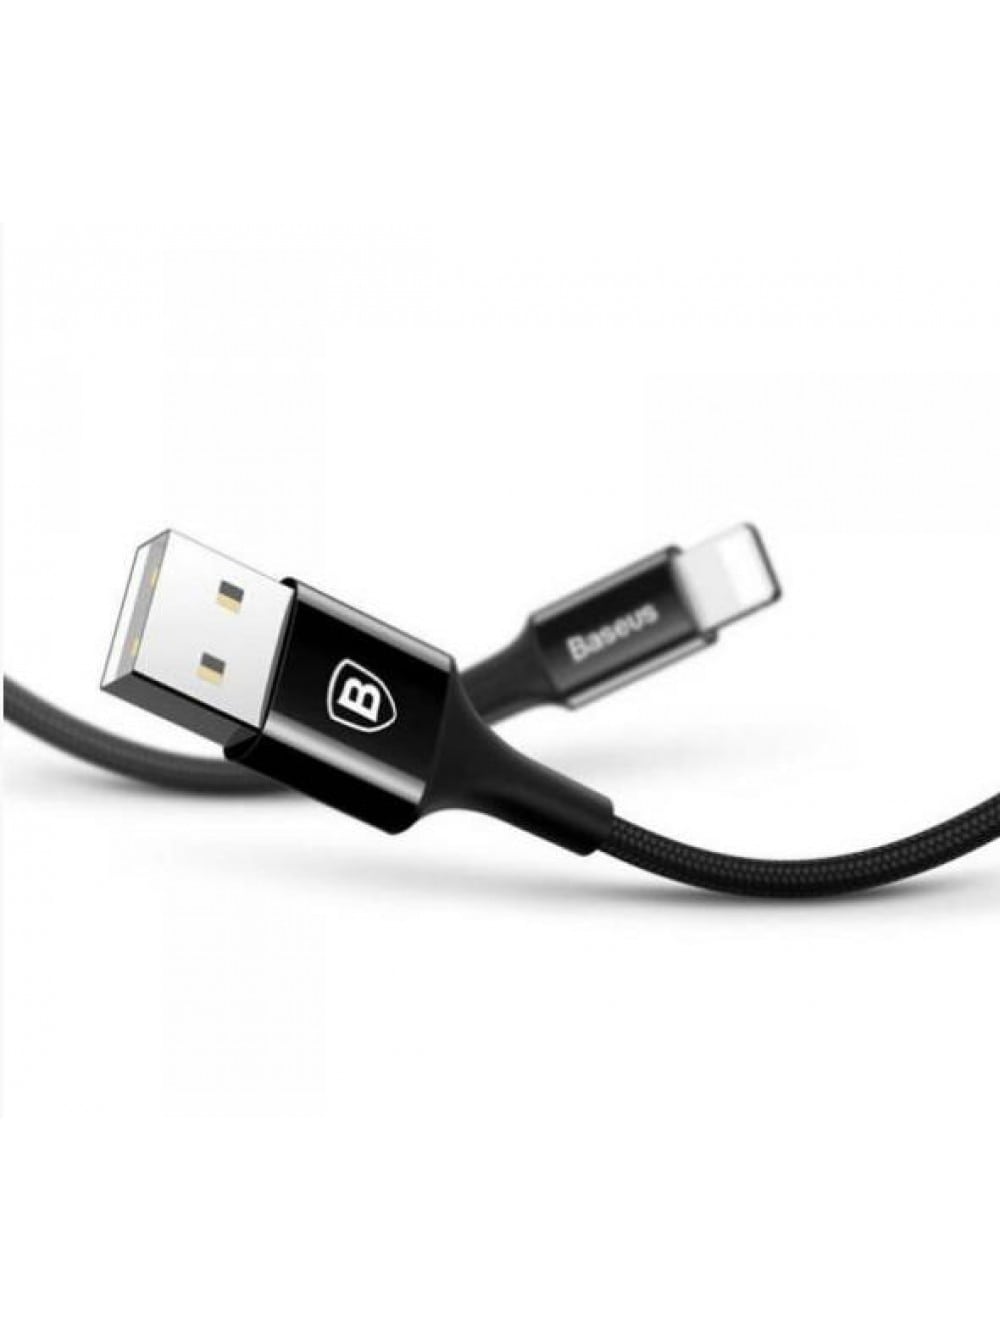 Кабель USB Lightning для Apple Baseus CALSY-01 металлические коннекторы 2A 1 метр черный - фото5